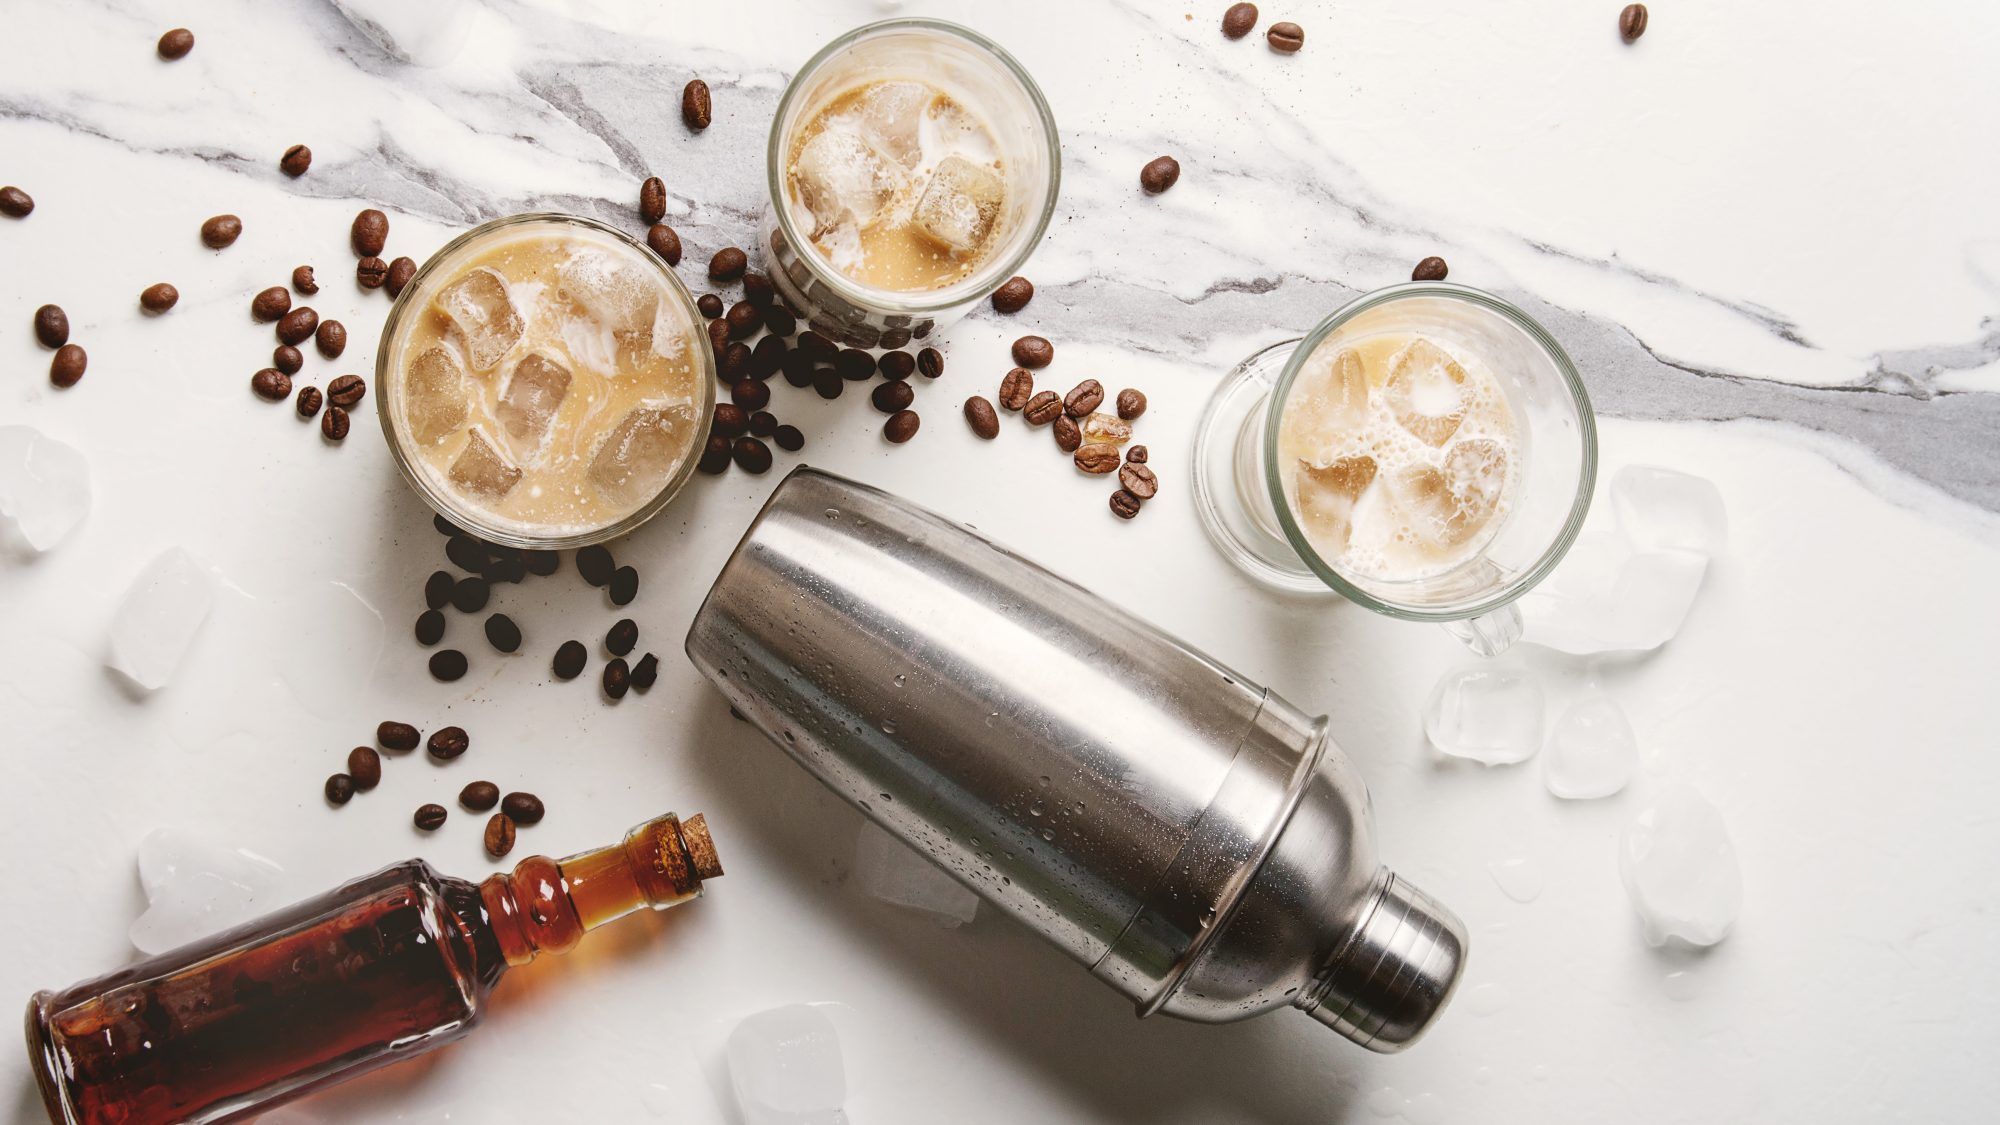 6 Buzz-würdige Kaffee-Cocktail-Rezepte, die so einfach zuzubereiten sind